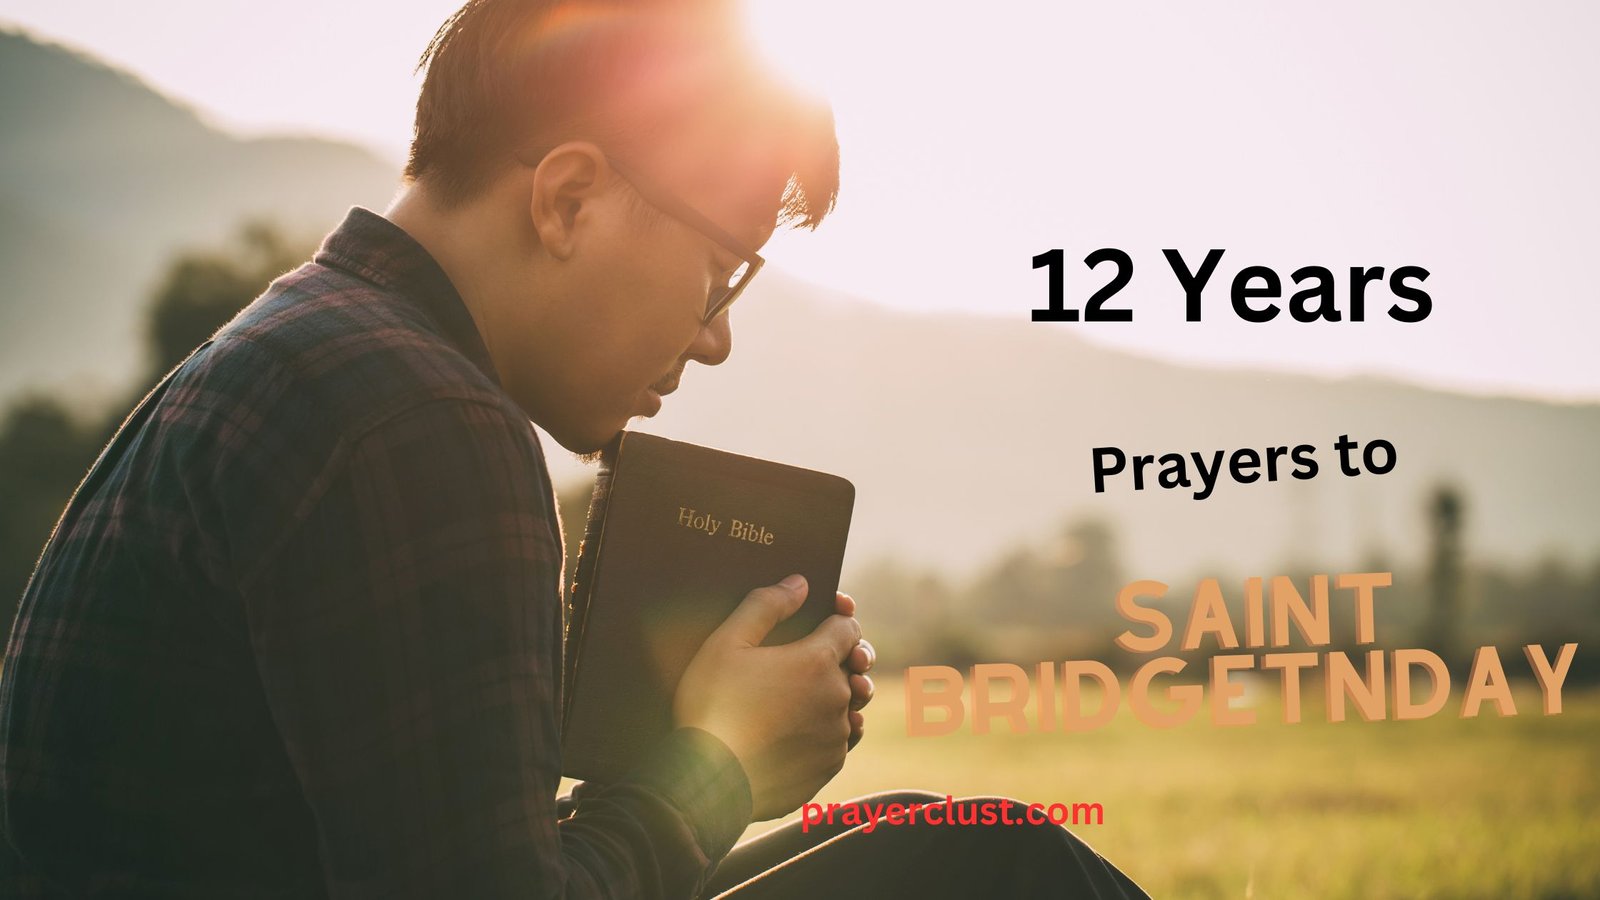 12 Years Prayer to Saint Bridget